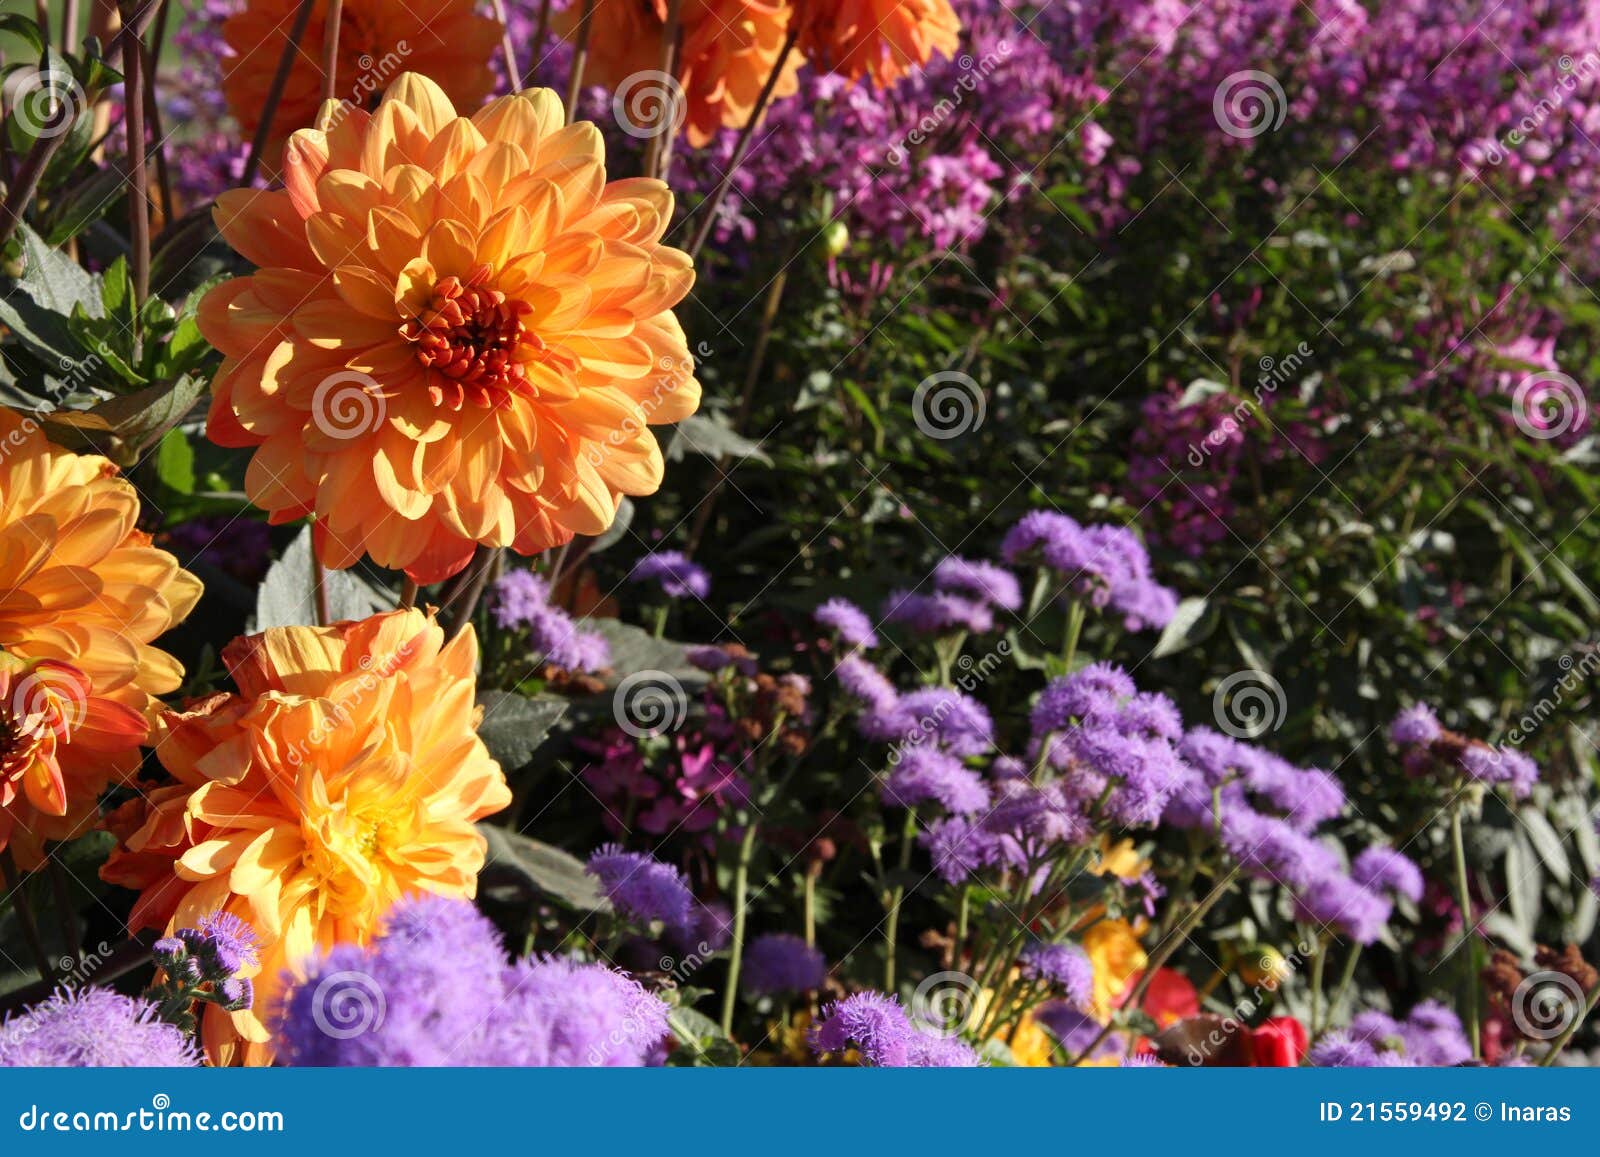 orange dahlias among purple flowers